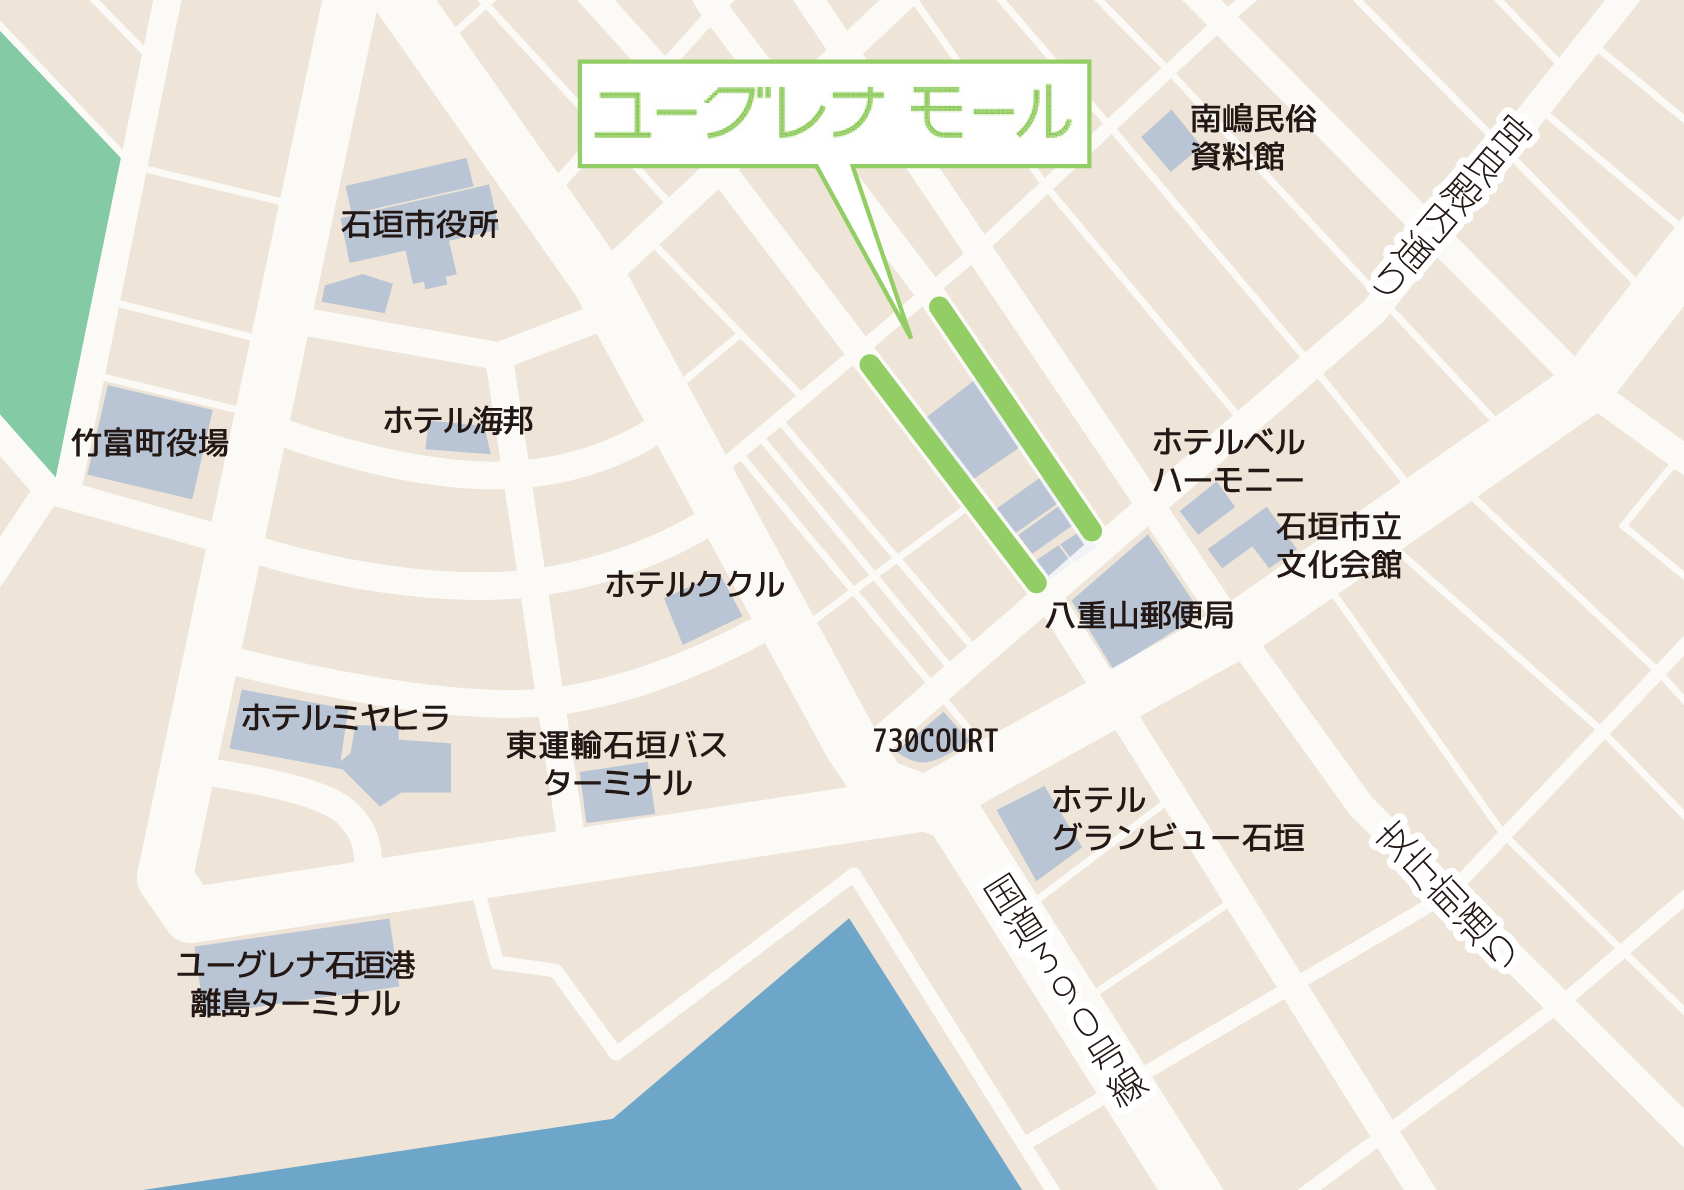 ユーグレナモール周辺地図 ユーグレナモール 石垣島 日本最南端のアーケード商店街